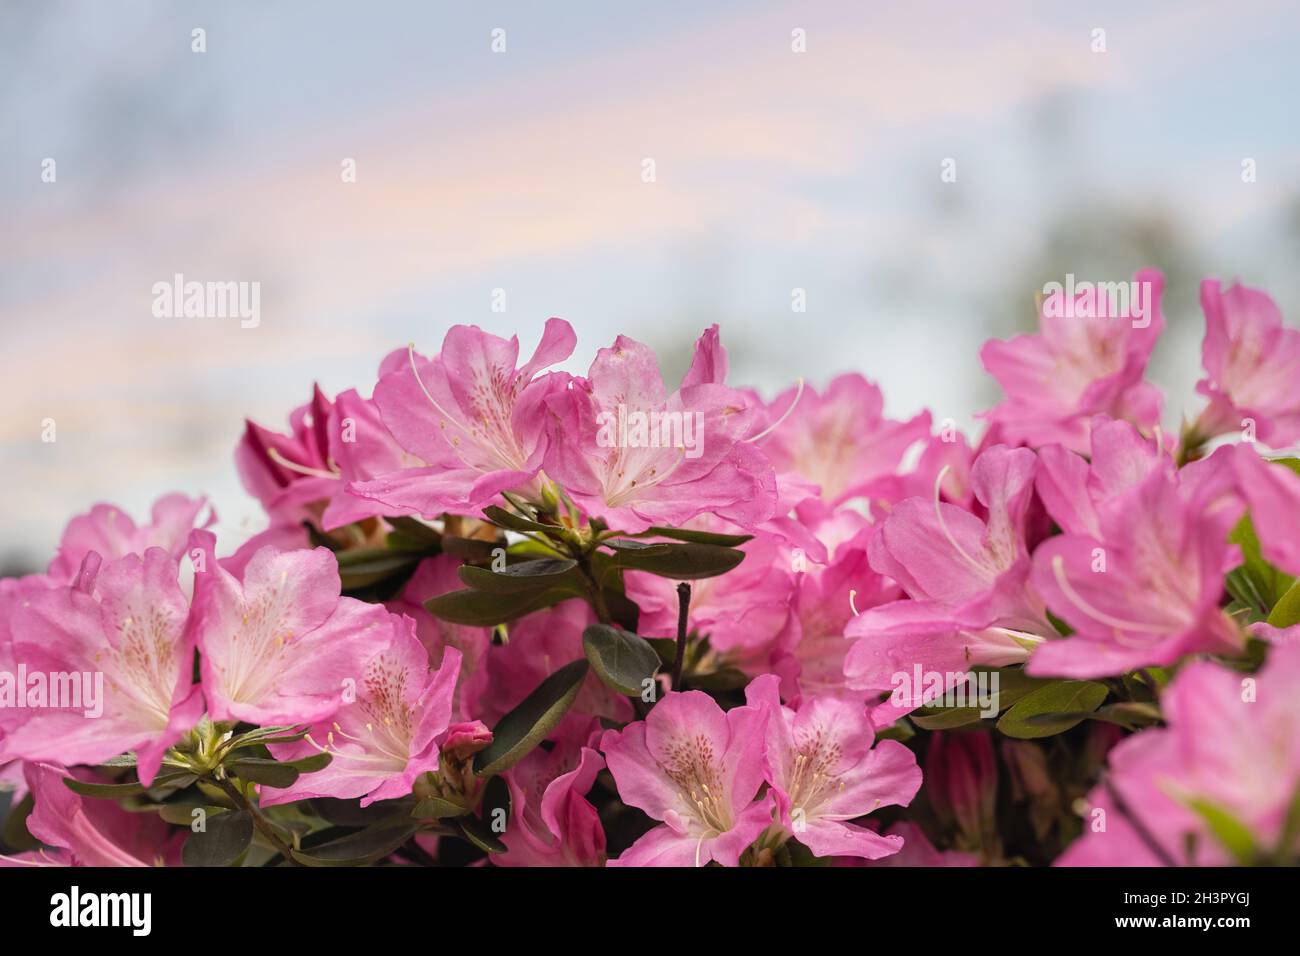 Azalea flowers in bloom Stock Photo